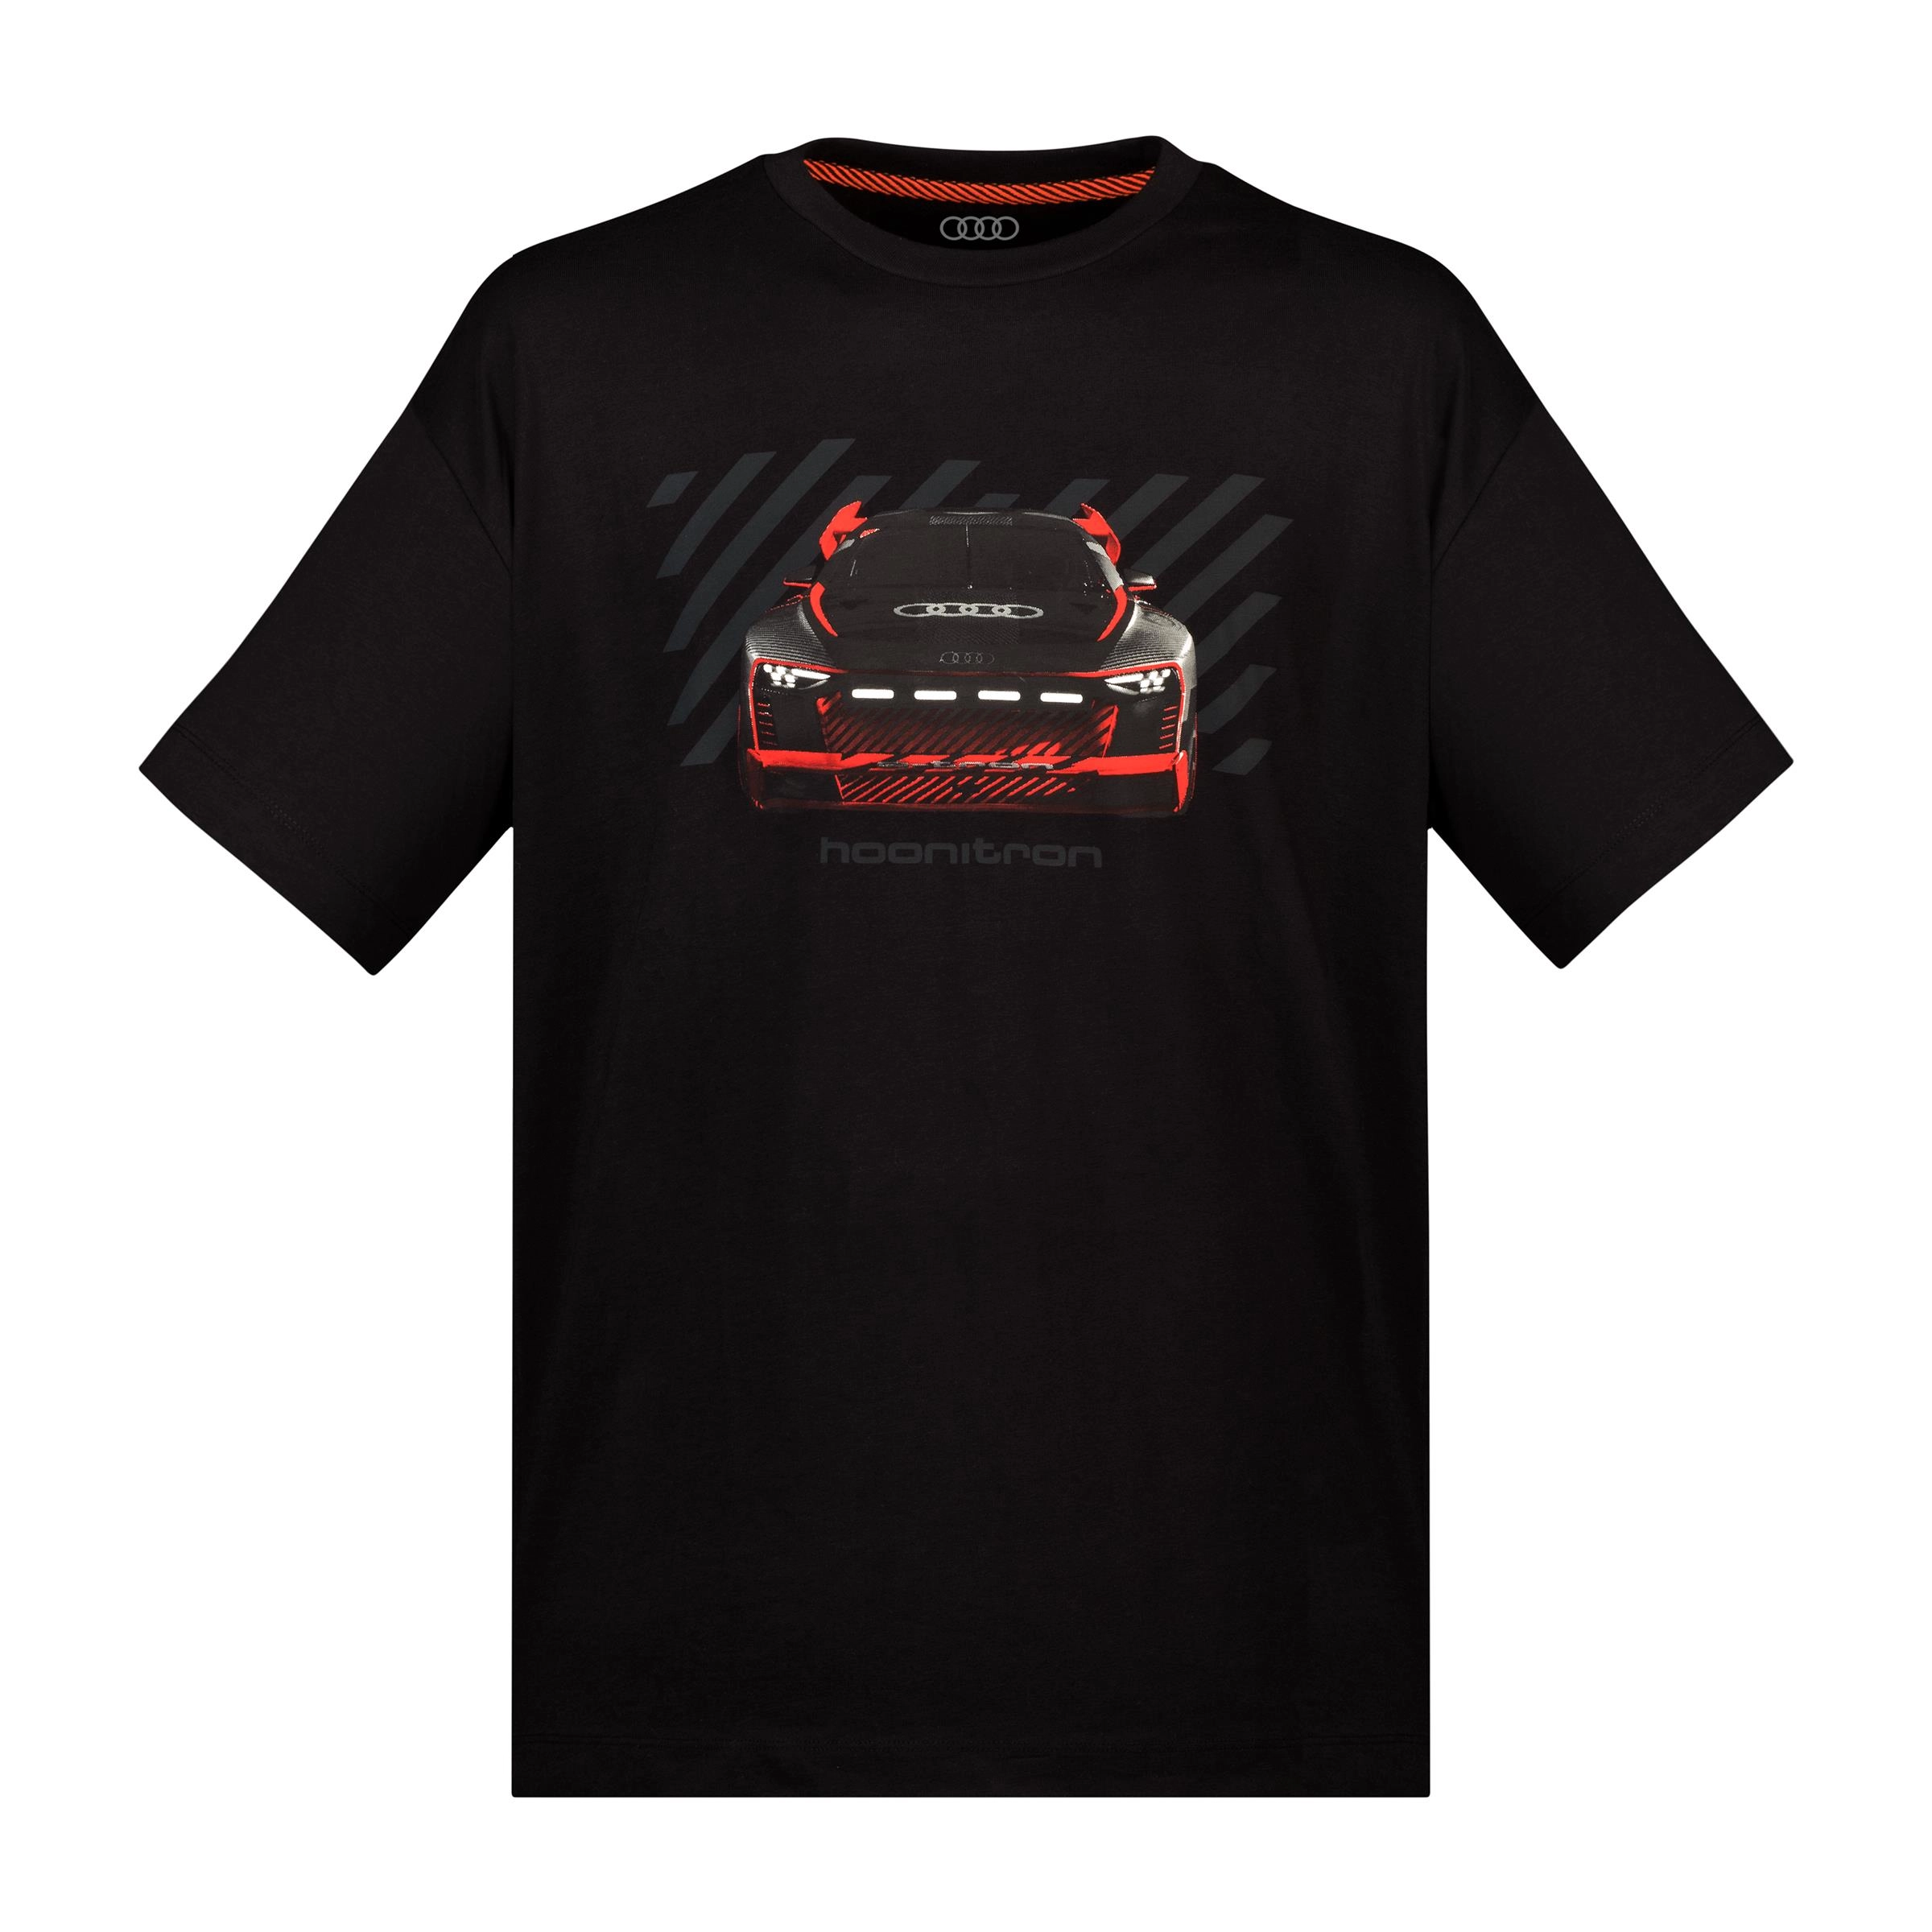 Audi Sport T-Shirt hoonitron Unisex schwarz Größe XL 3132200705